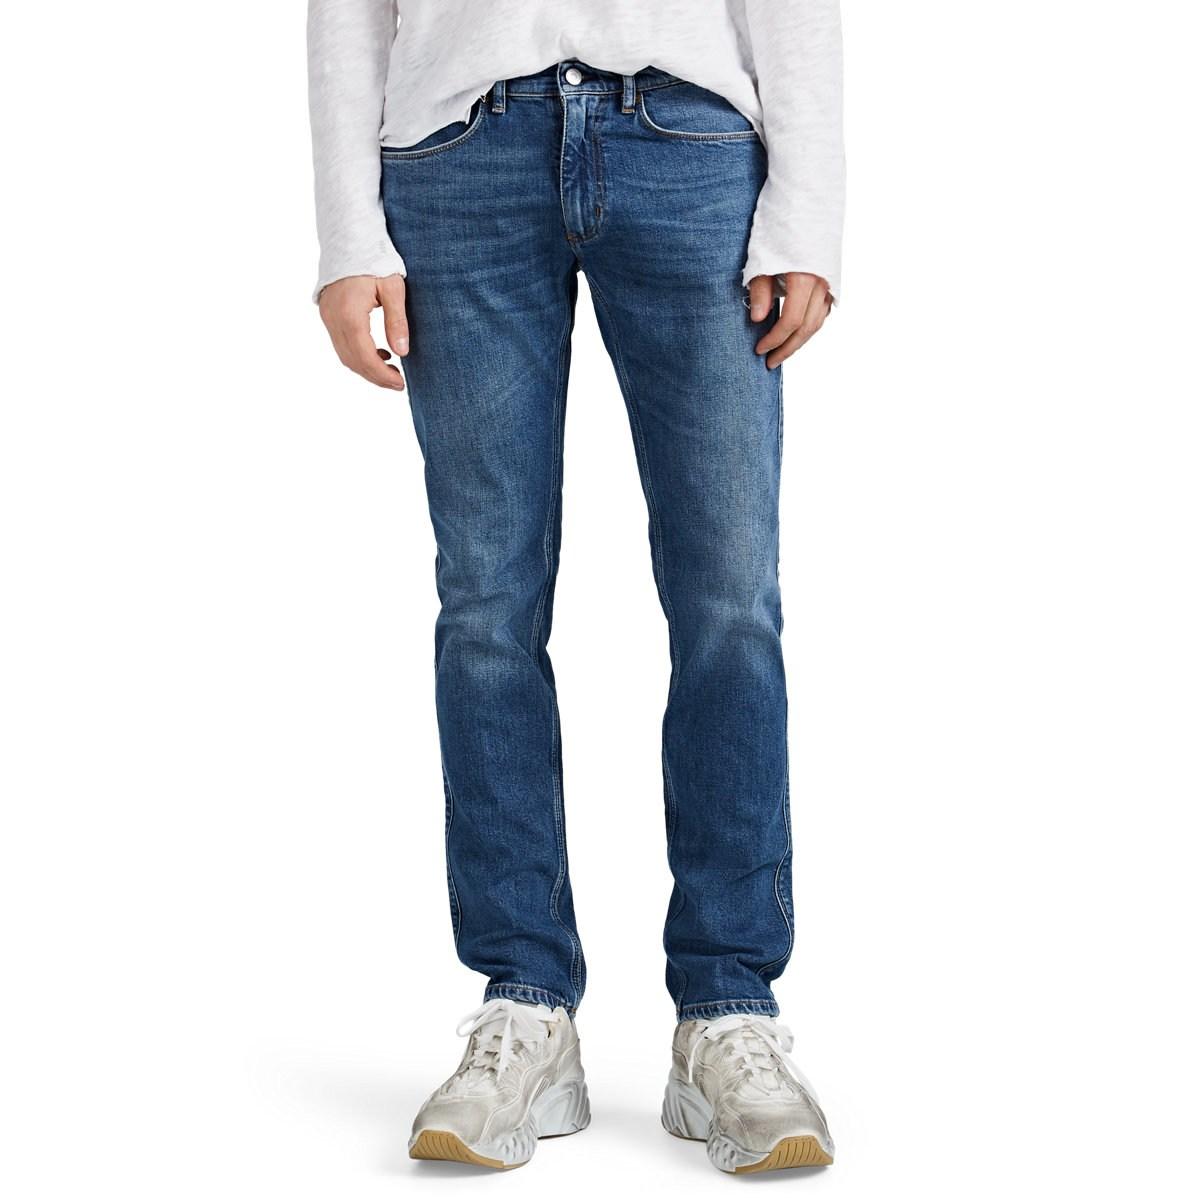 Acne Studios Denim Max Skinny Jeans in Blue for Men - Lyst